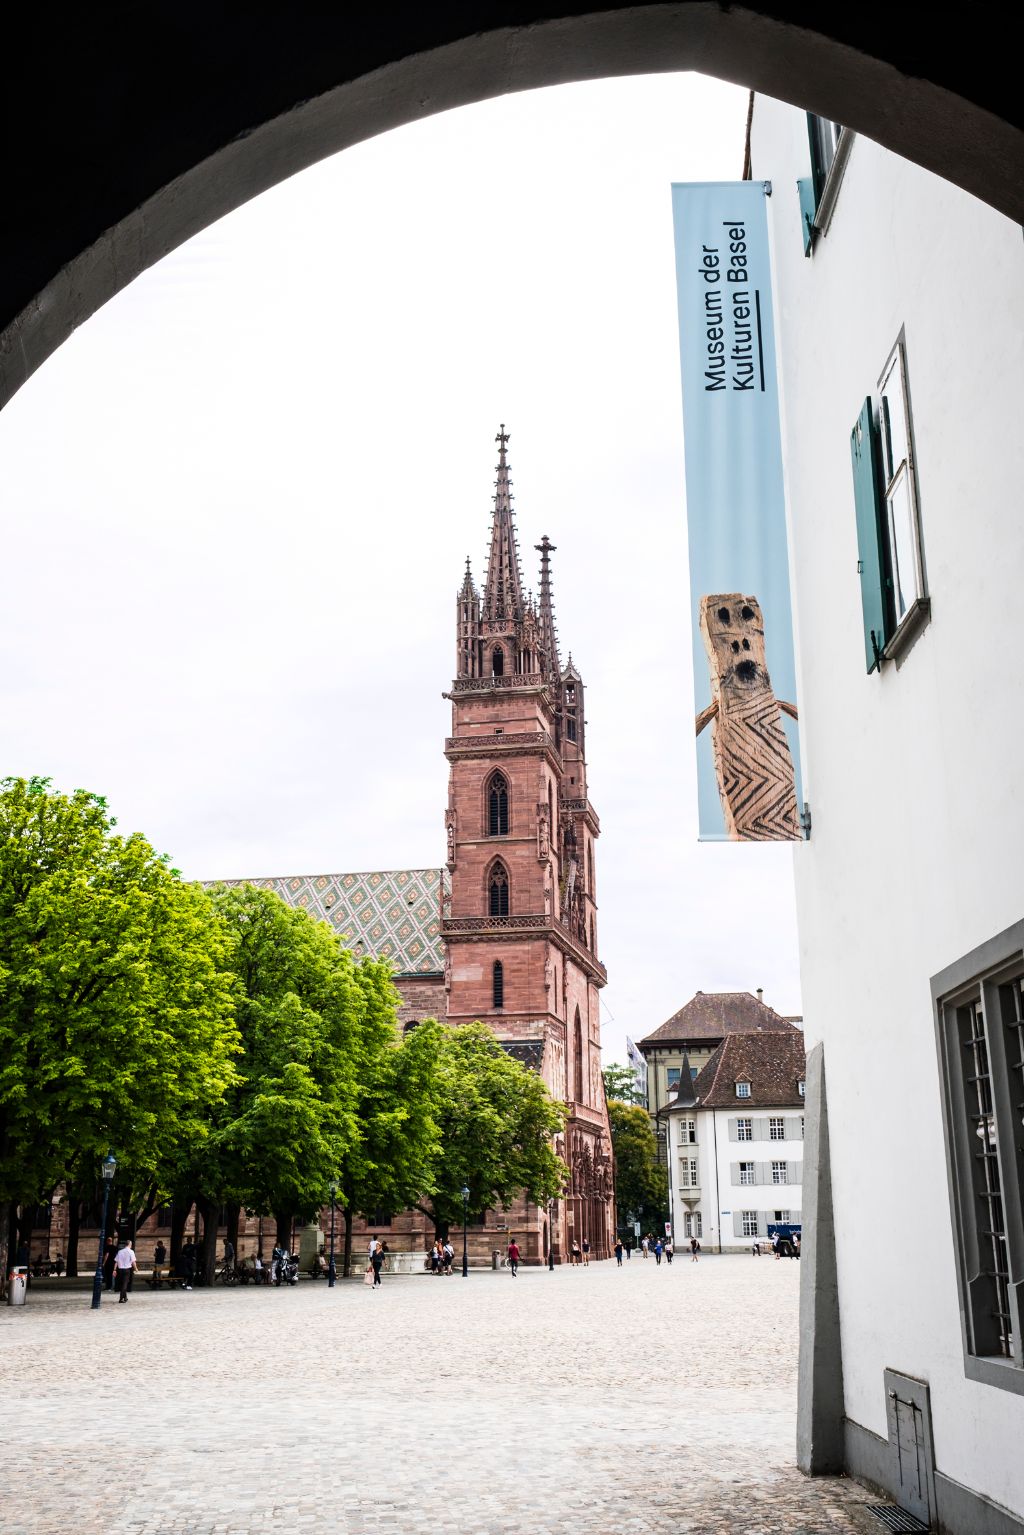 Das Bild zeigt das Eingangstor des Museums. Durch das Tor hindurch sieht man den Münsterplatz und im Hintergrund das Basler Münster